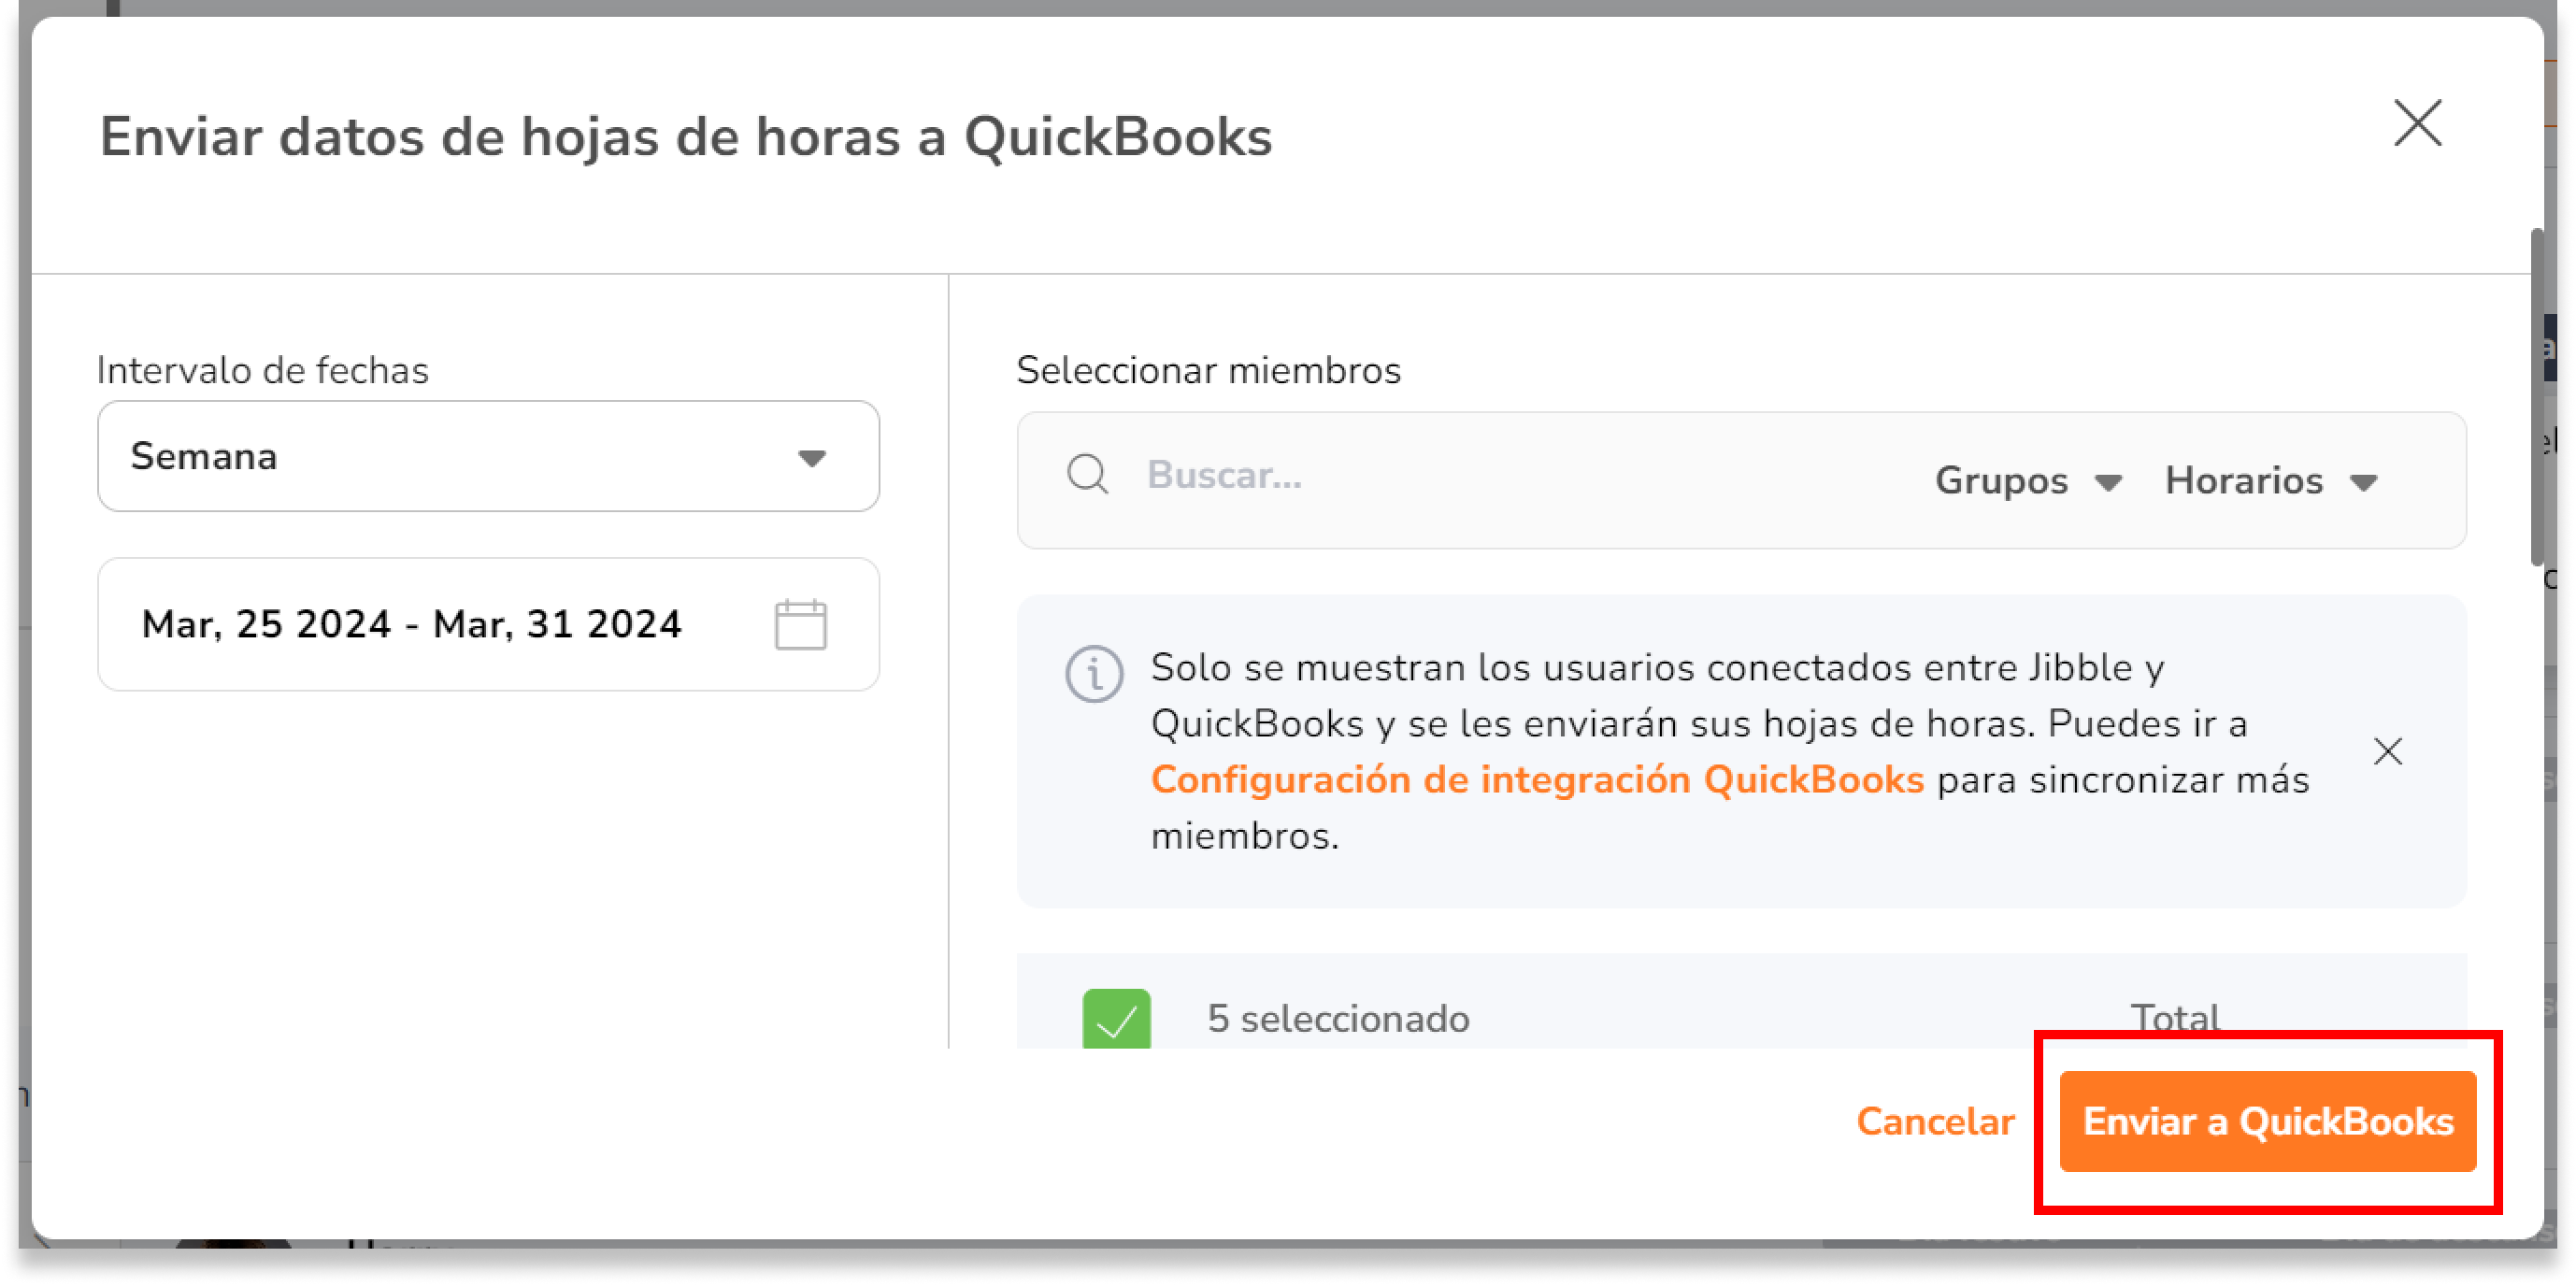 Una vez realizadas todas las selecciones, haz clic en Enviar a QuickBooks. 